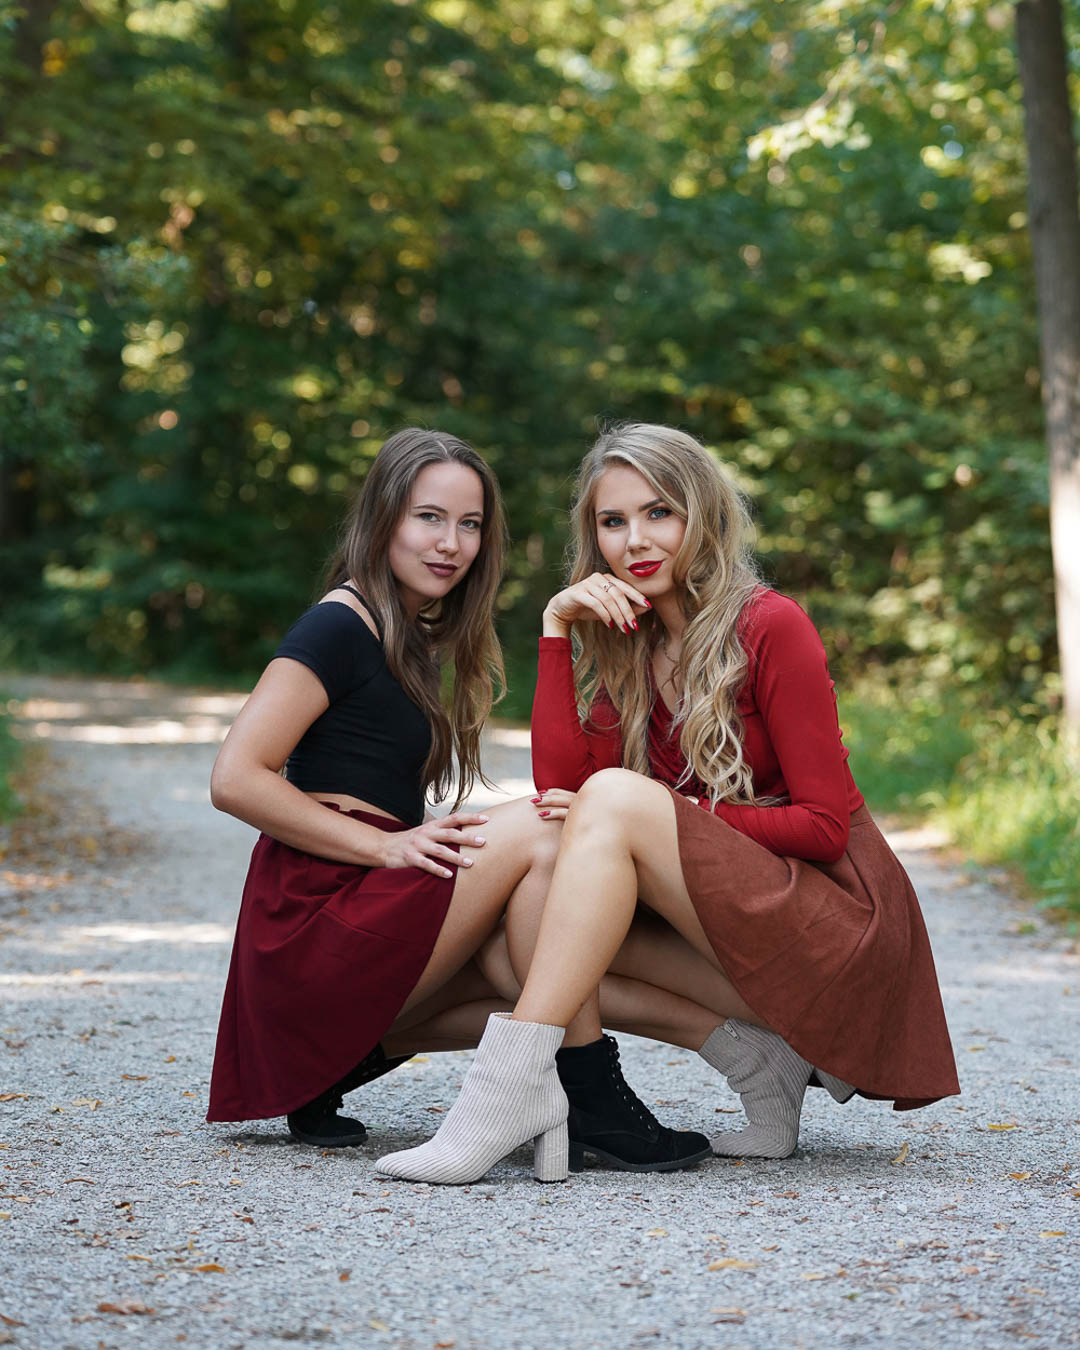 Herbstliche Freundschaftsbilder im Wald ohne Filter